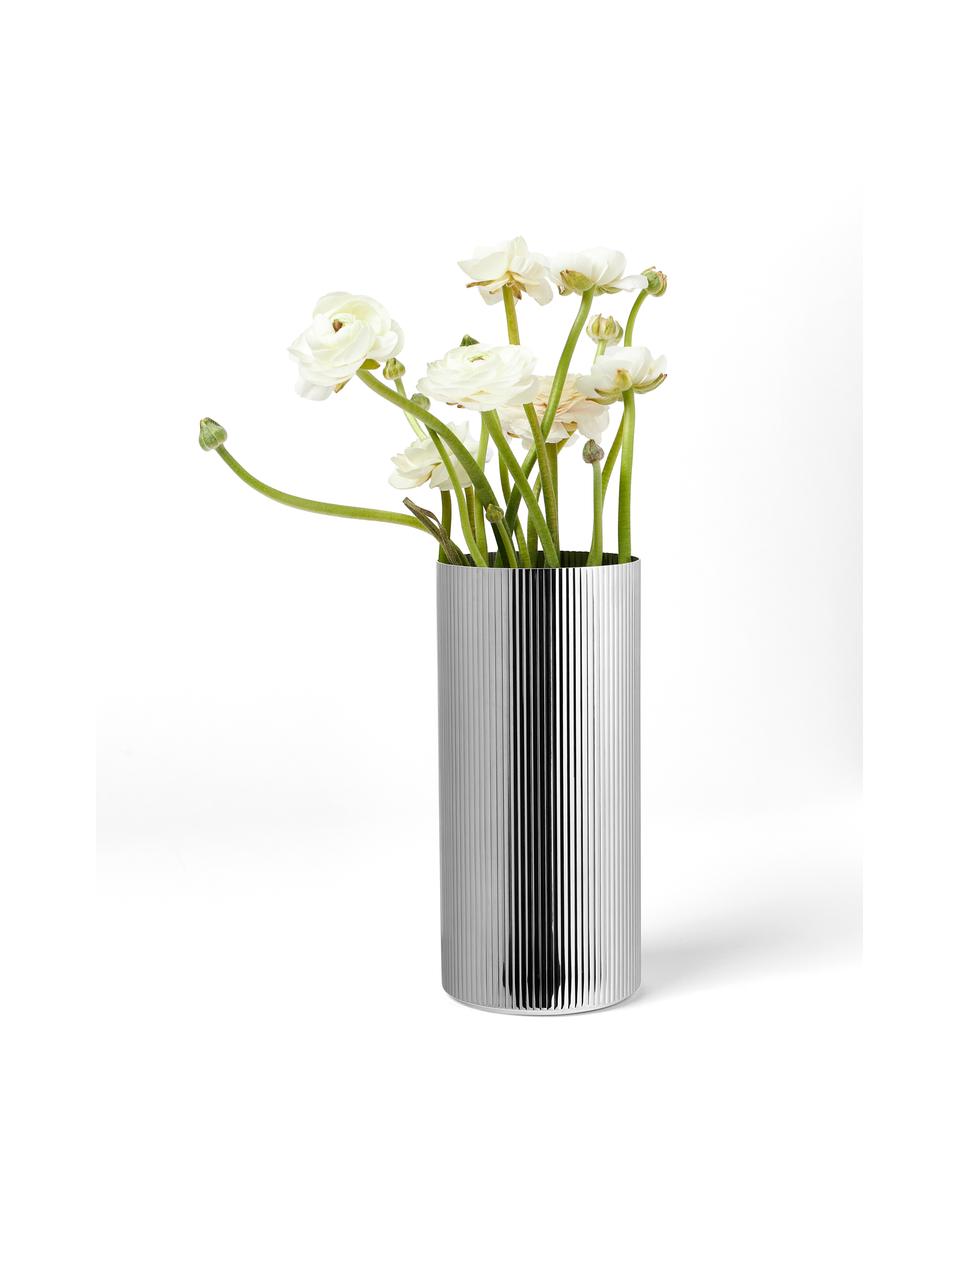 Edelstahl-Vase Bernadotte mit Rillenstruktur, H 26 cm, Edelstahl, poliert, Silberfarben, hochglanzpoliert, Ø 12 x H 26 cm